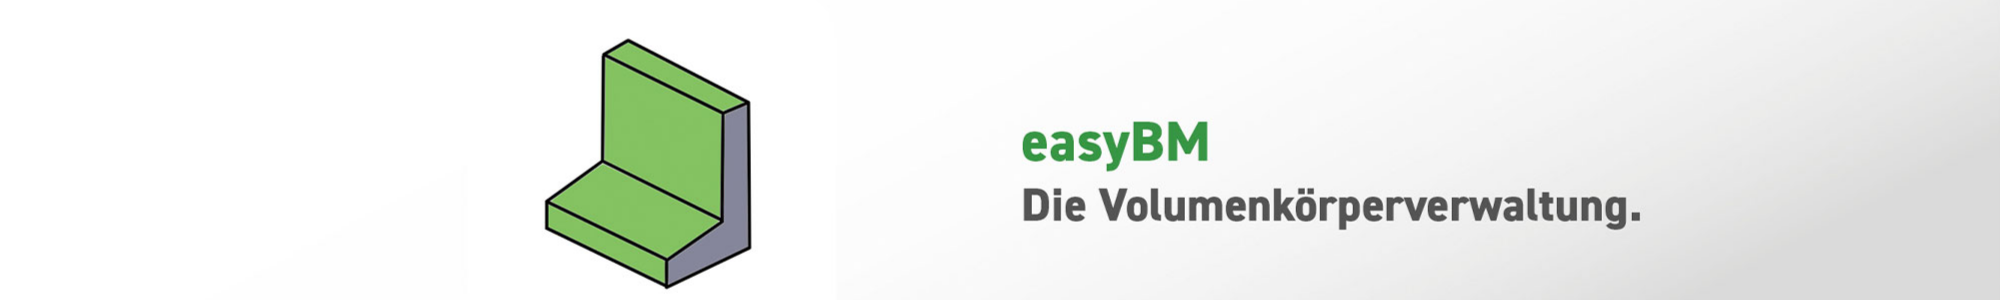 easyBM - isl-kocher GmbH